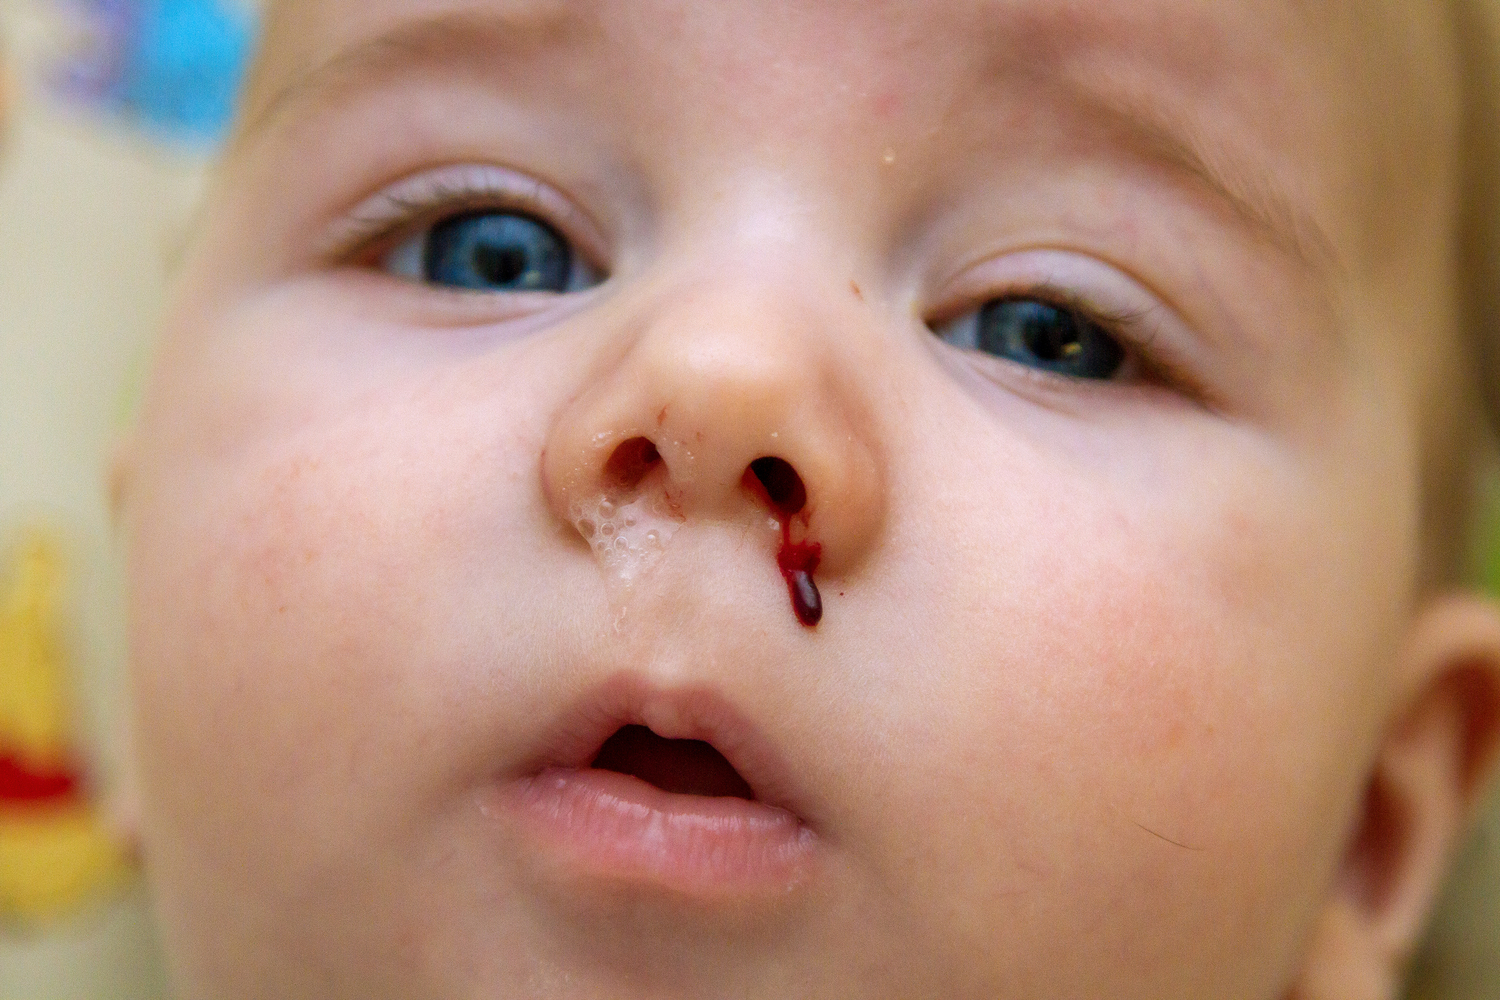 Baby's nose bleeding